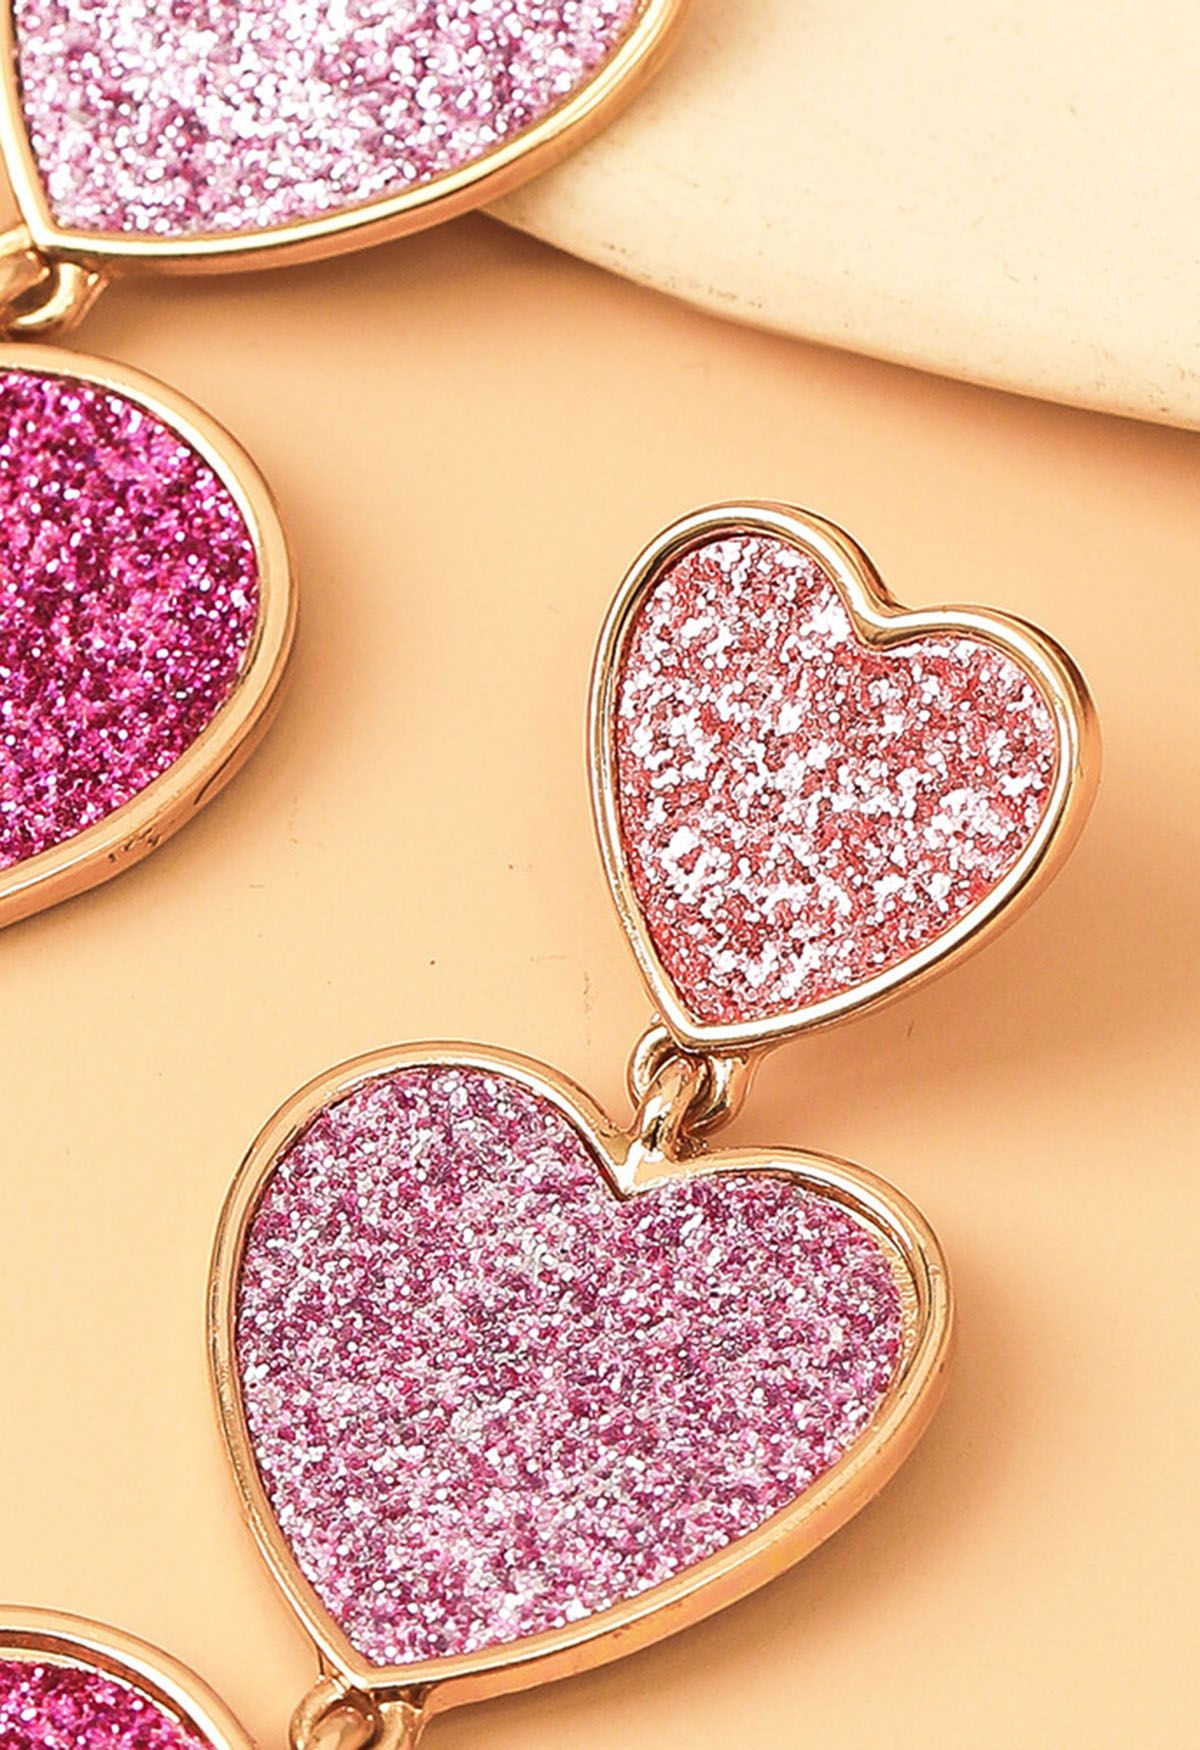 Glittering Triple-Heart Drop Earrings